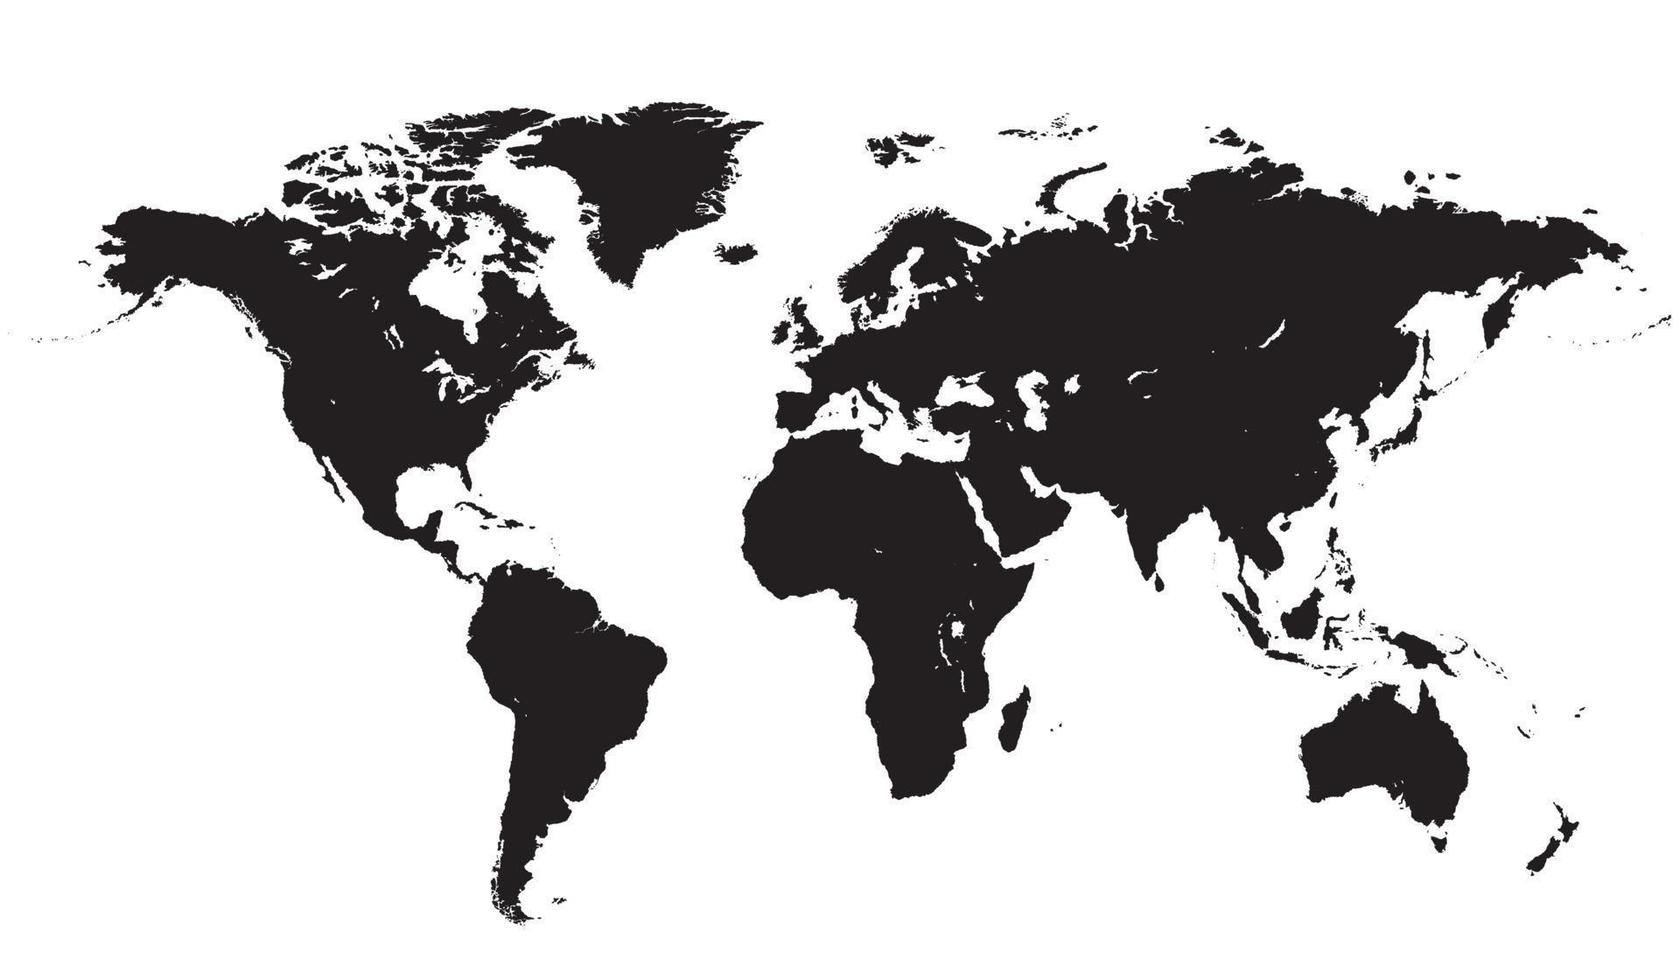 wereldkaart vector, geïsoleerd op een witte achtergrond. platte aarde, grijze kaartsjabloon voor websitepatroon, jaarverslag, inphographics. wereldbol vergelijkbaar wereldkaartpictogram. vector